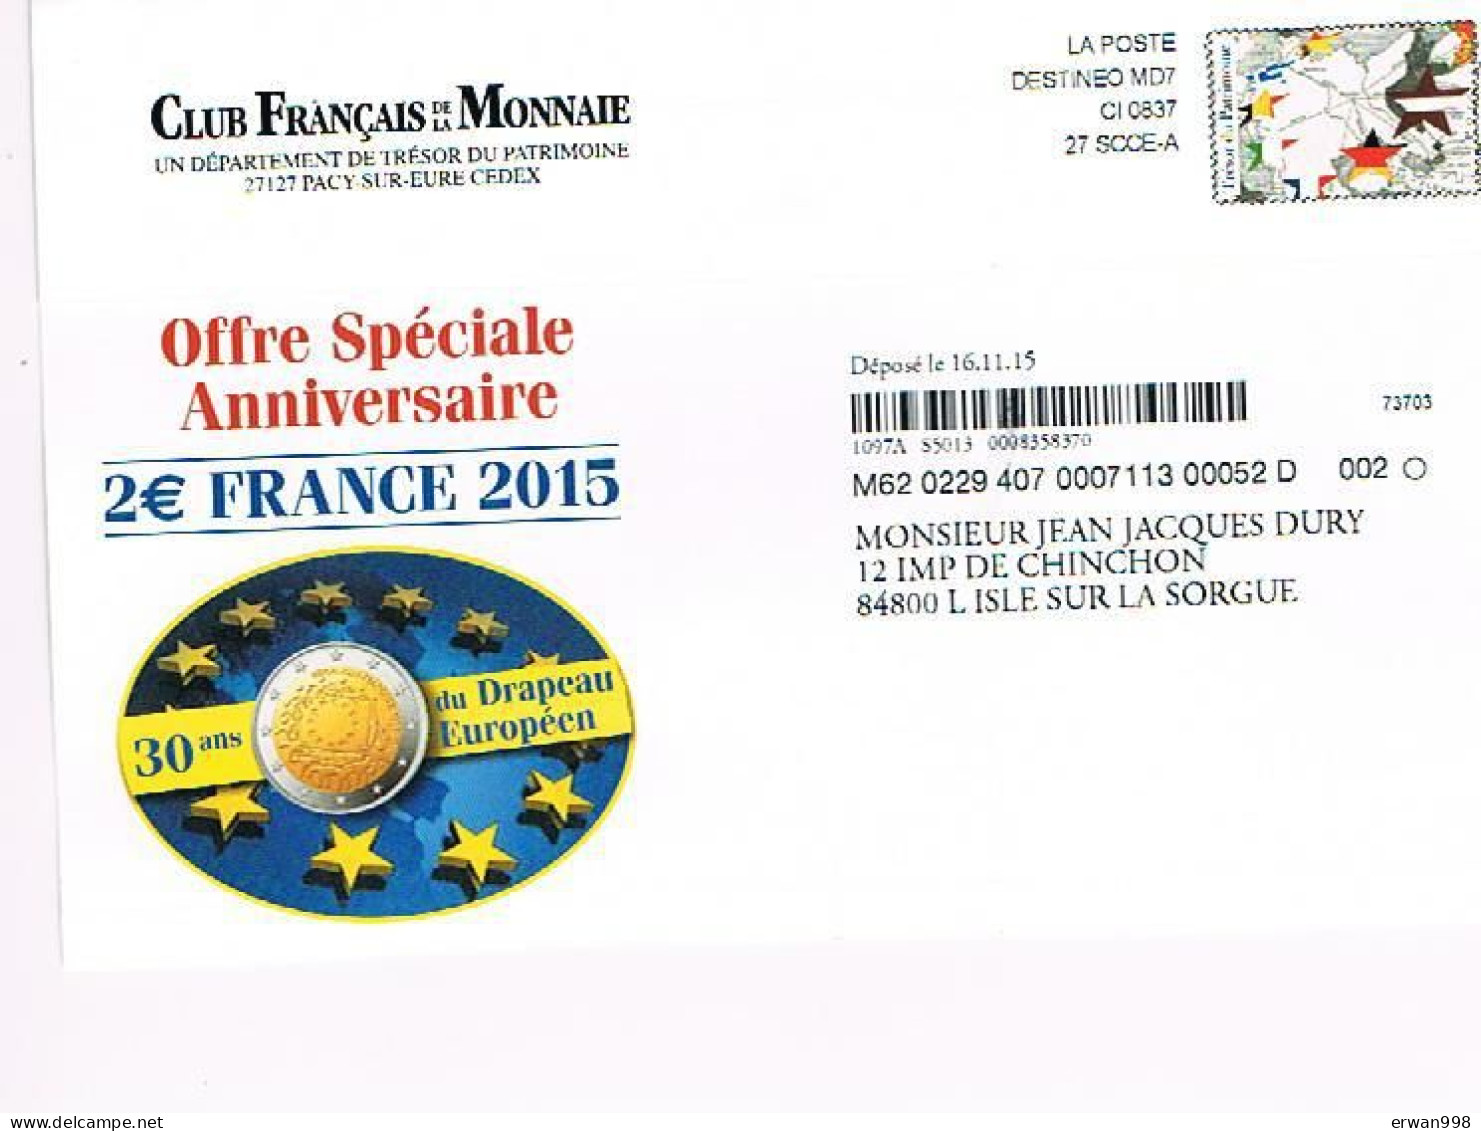 Enveloppe Avec Simili-timbre Drapeau Européen Affranchissement Destineo MD7  Thème EUROPE DRAPEAU (680) - Enteros Privados